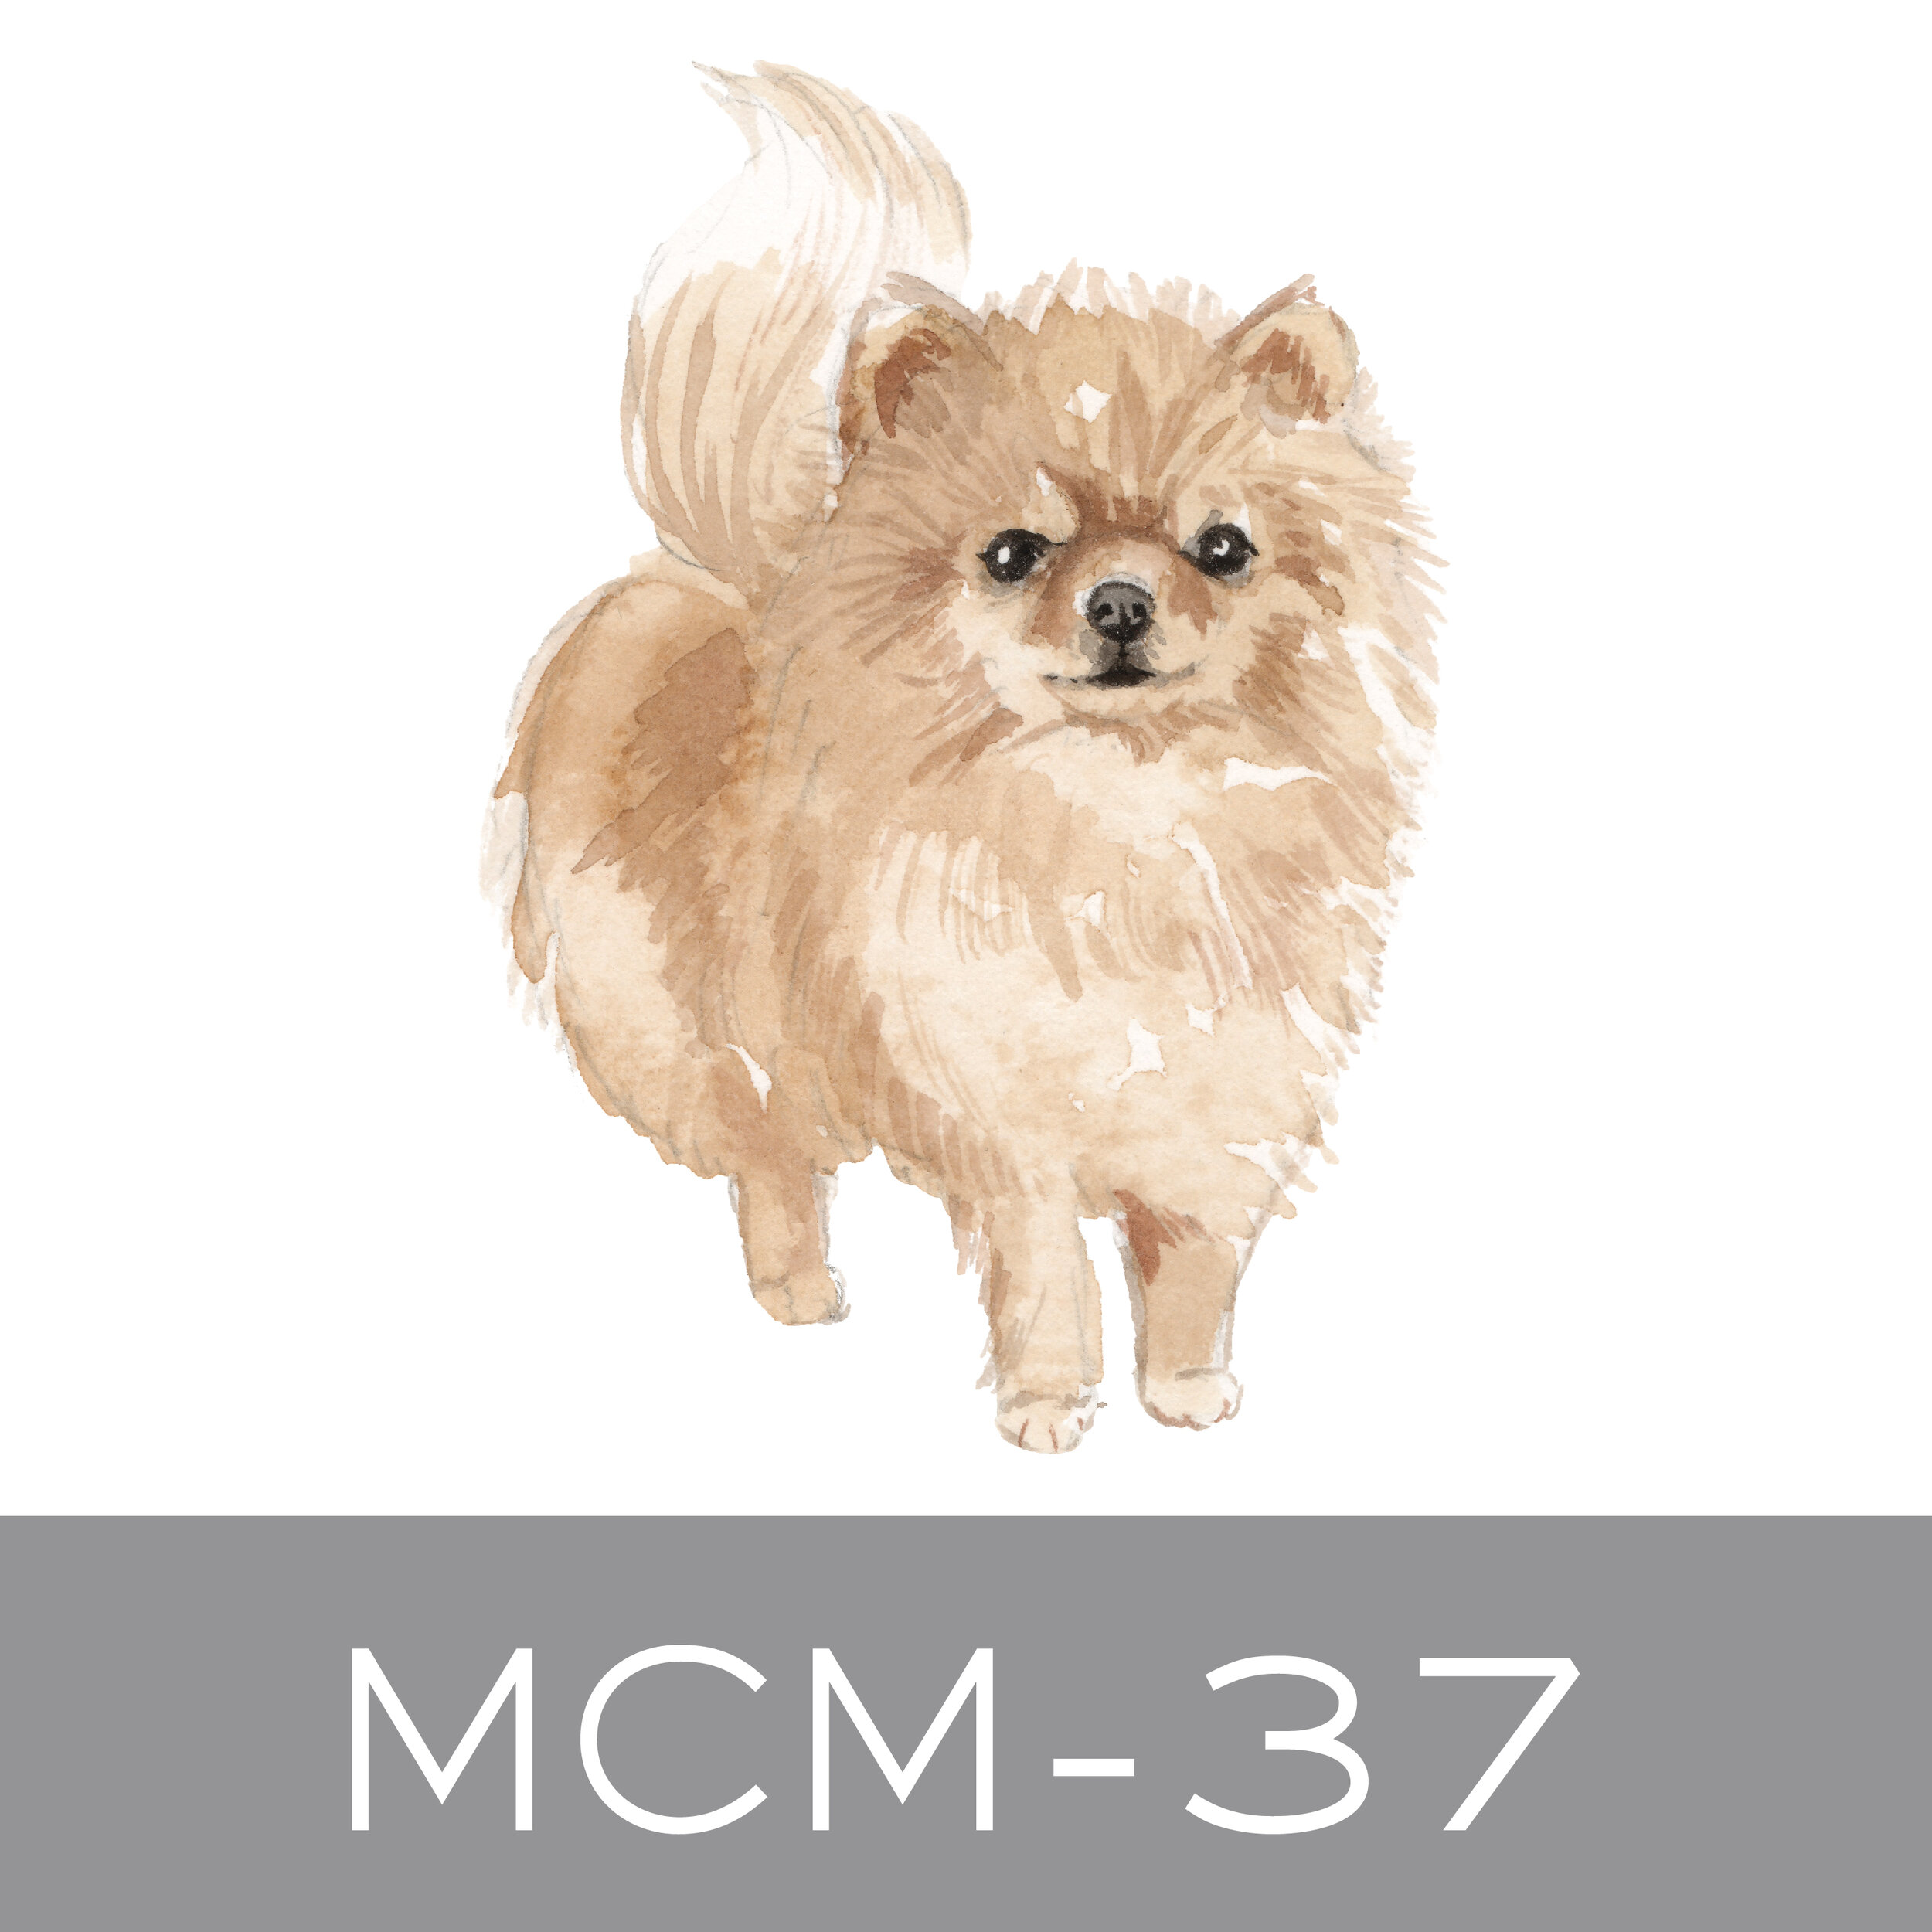 MCM-37.jpg